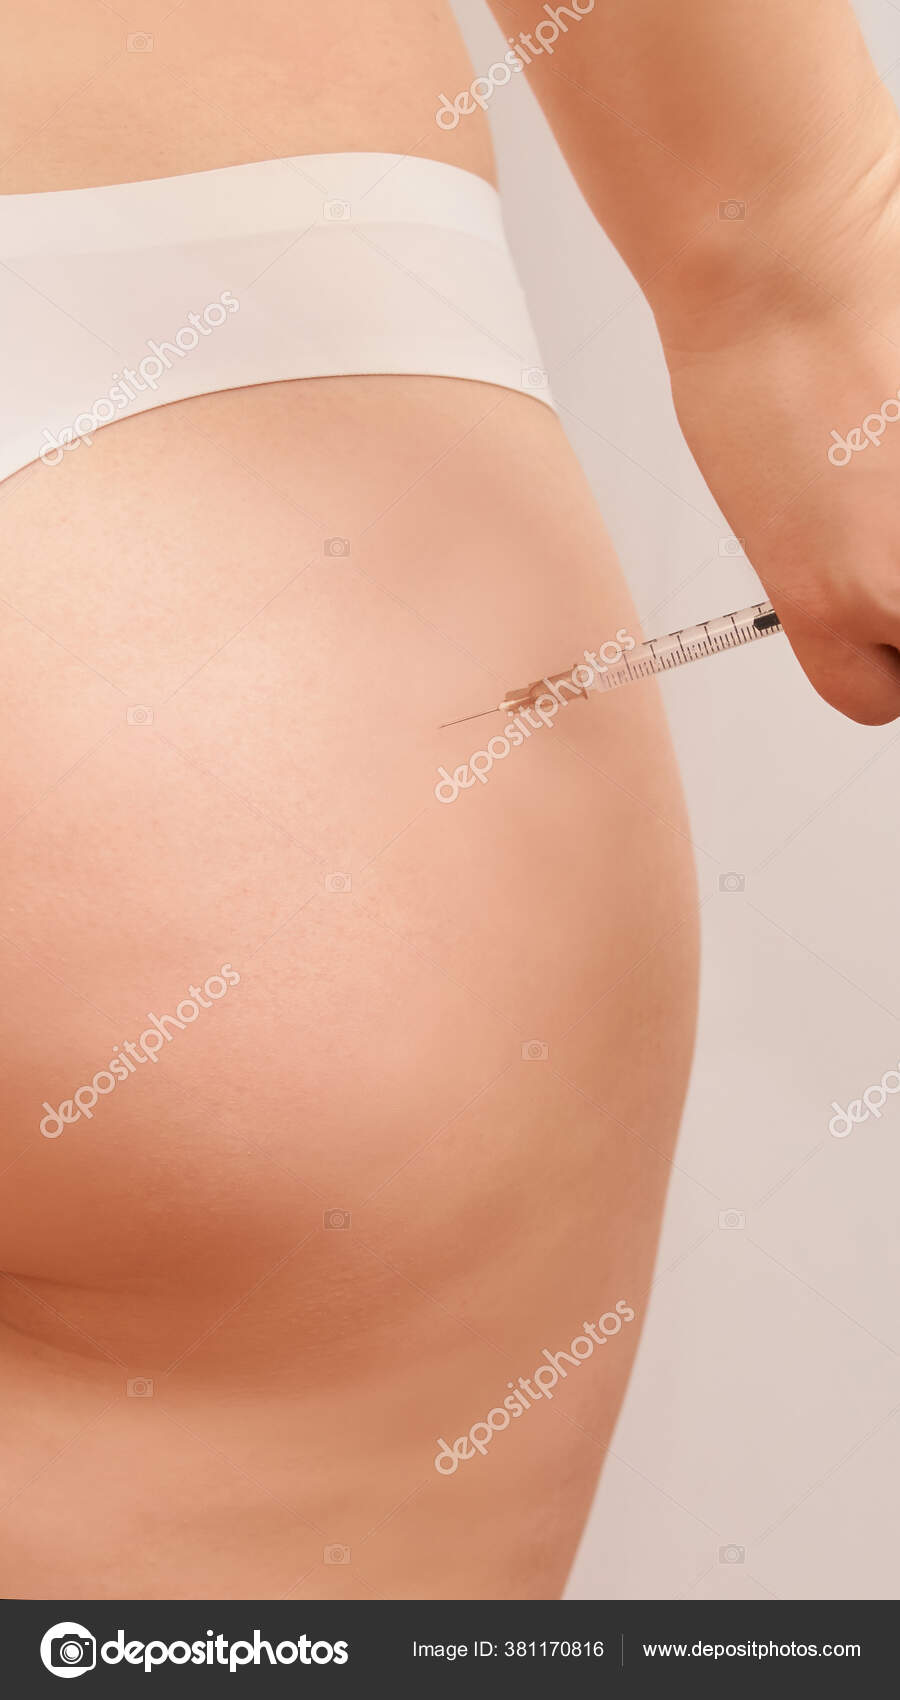 как делают уколы в жопу женщинам фото 110